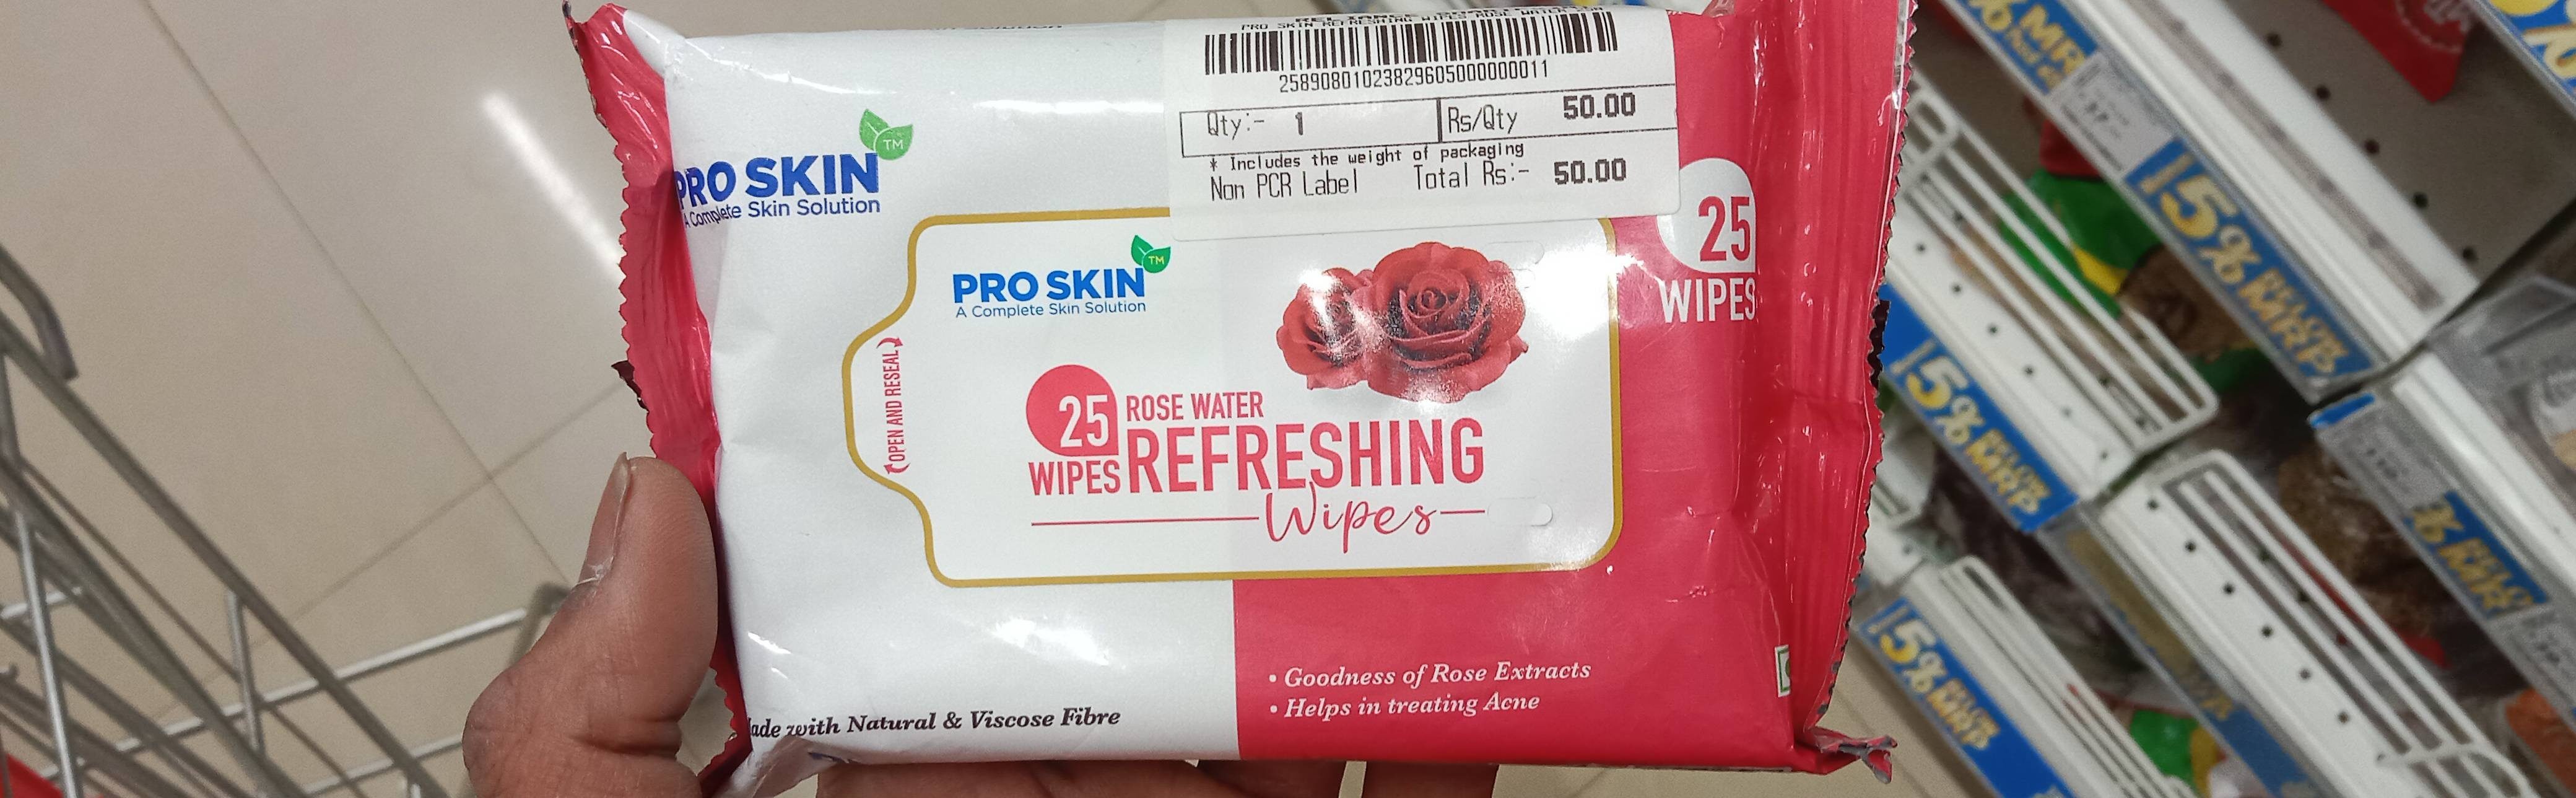 Pro skin Rose Water Wipes 25 - Produkt - en